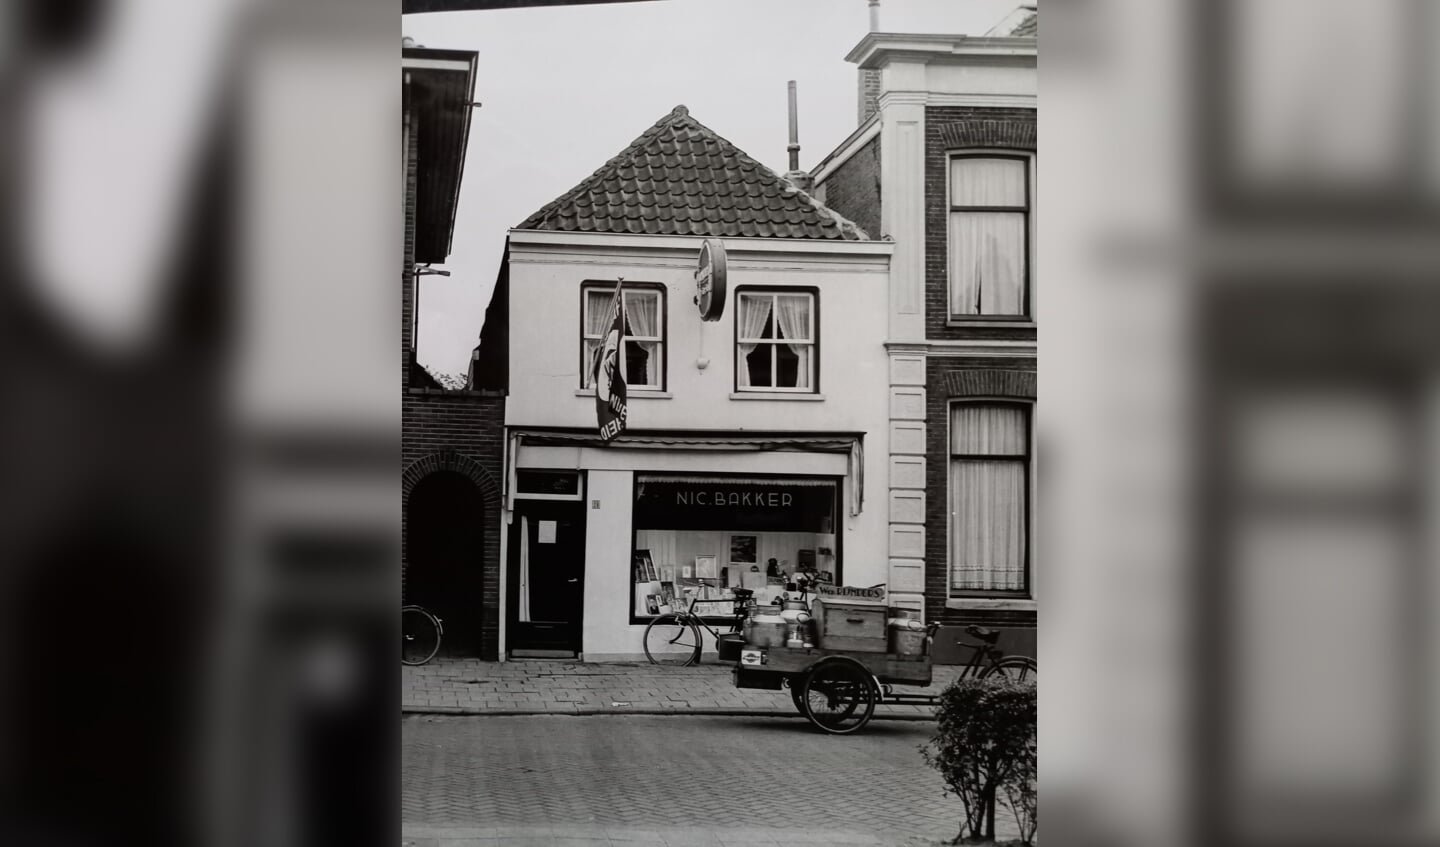 Het pand van Foto Nic. Bakker rond 1950. De melkkar van Dick Rijnders van de Nieuweweg staat voor het pand. Hij kwam vaak een praatje maken. Nu is hier kledingzaak State of Art te vinden. Het gehele pand is nog steeds familiebezit.